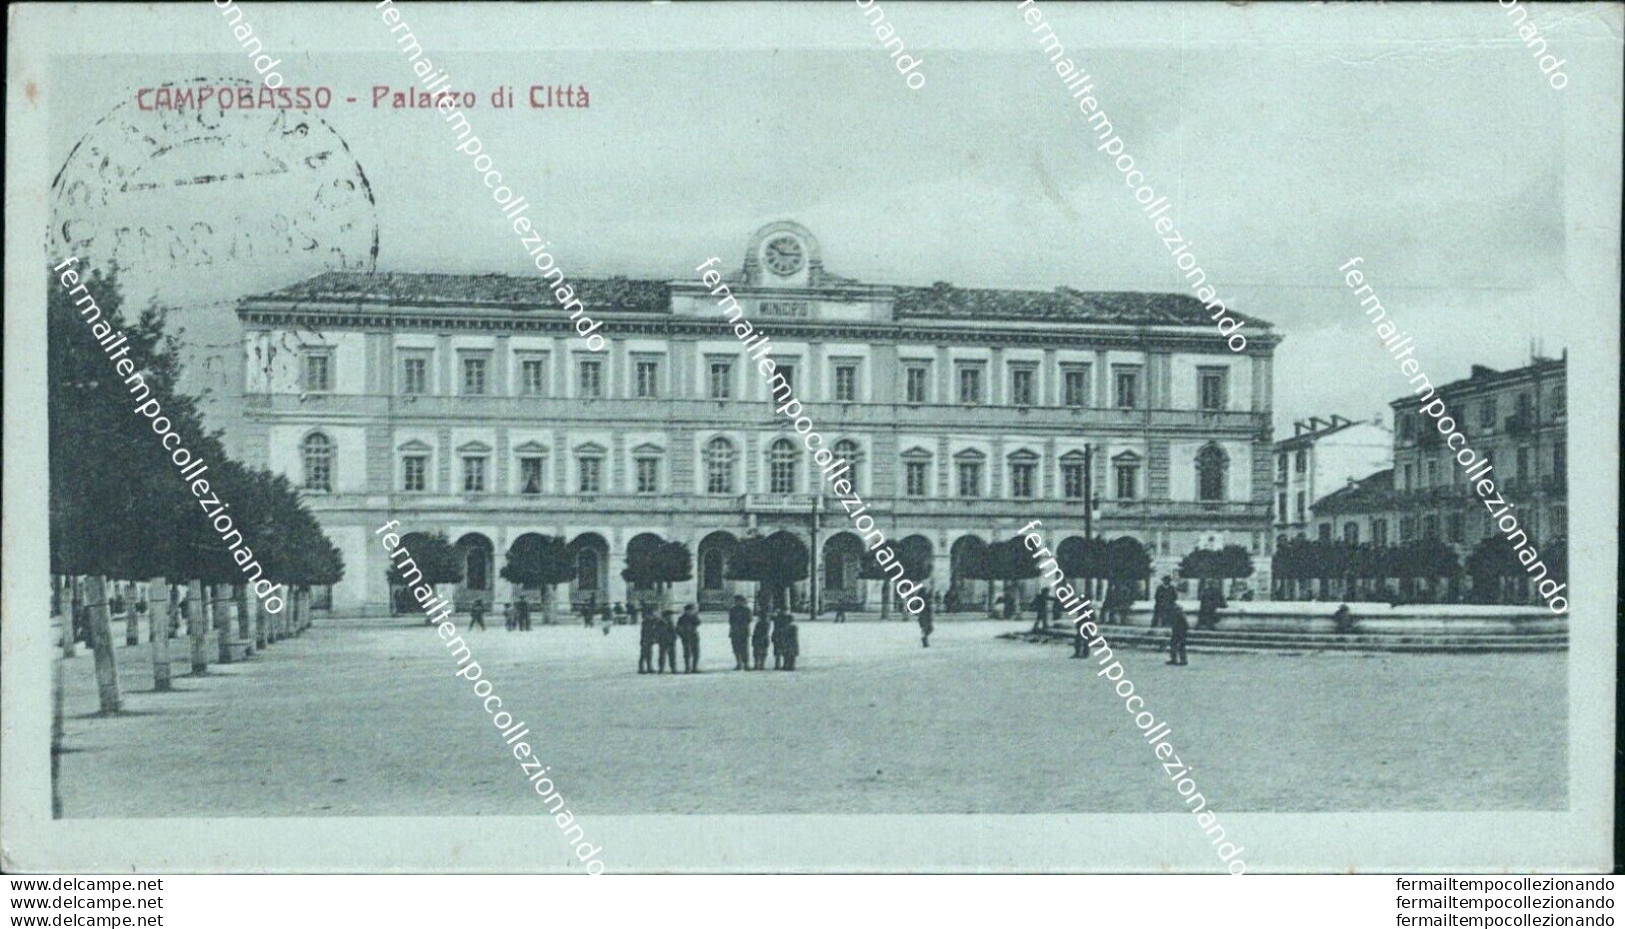 Bf228 Cartolina Mini Cartolina Campobasso Palazzo Di Citta' 1924 - Campobasso